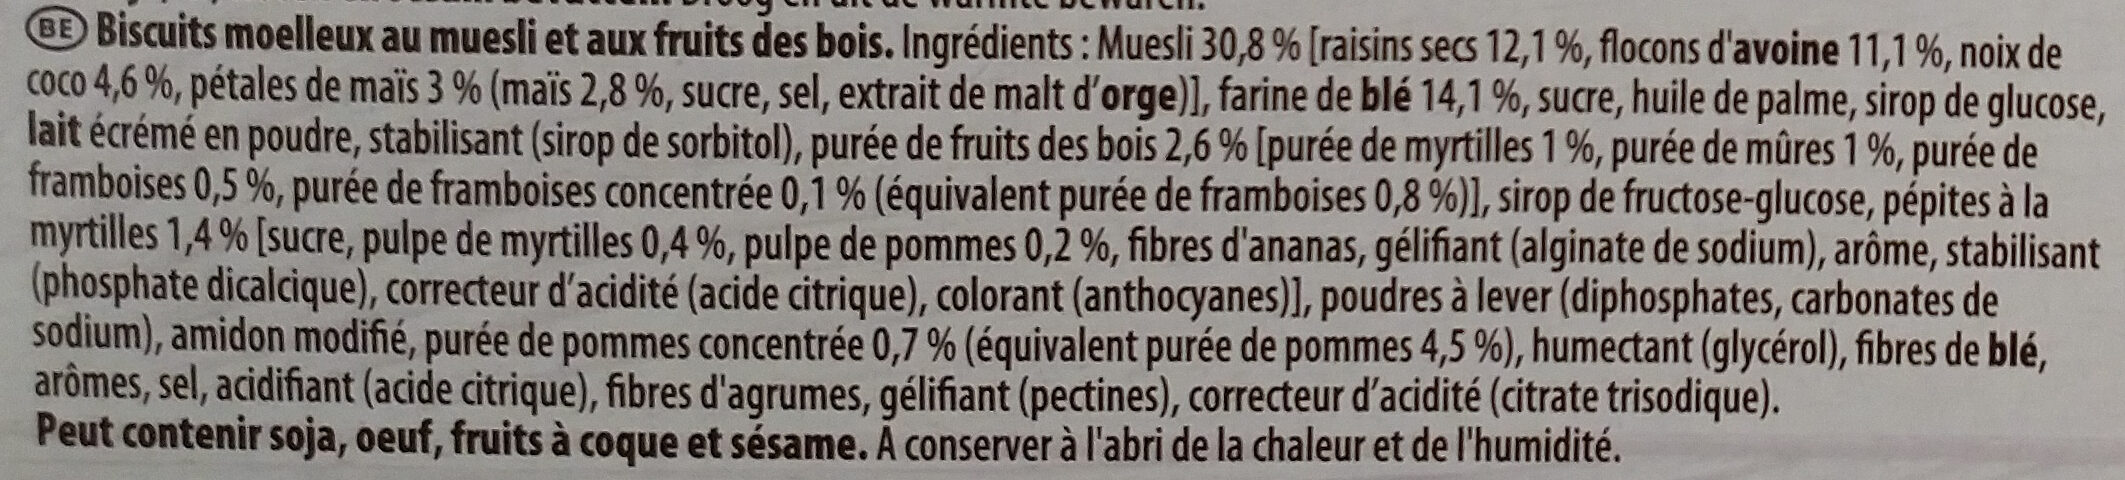 Moelleux Fruits des Bois - Ingrédients